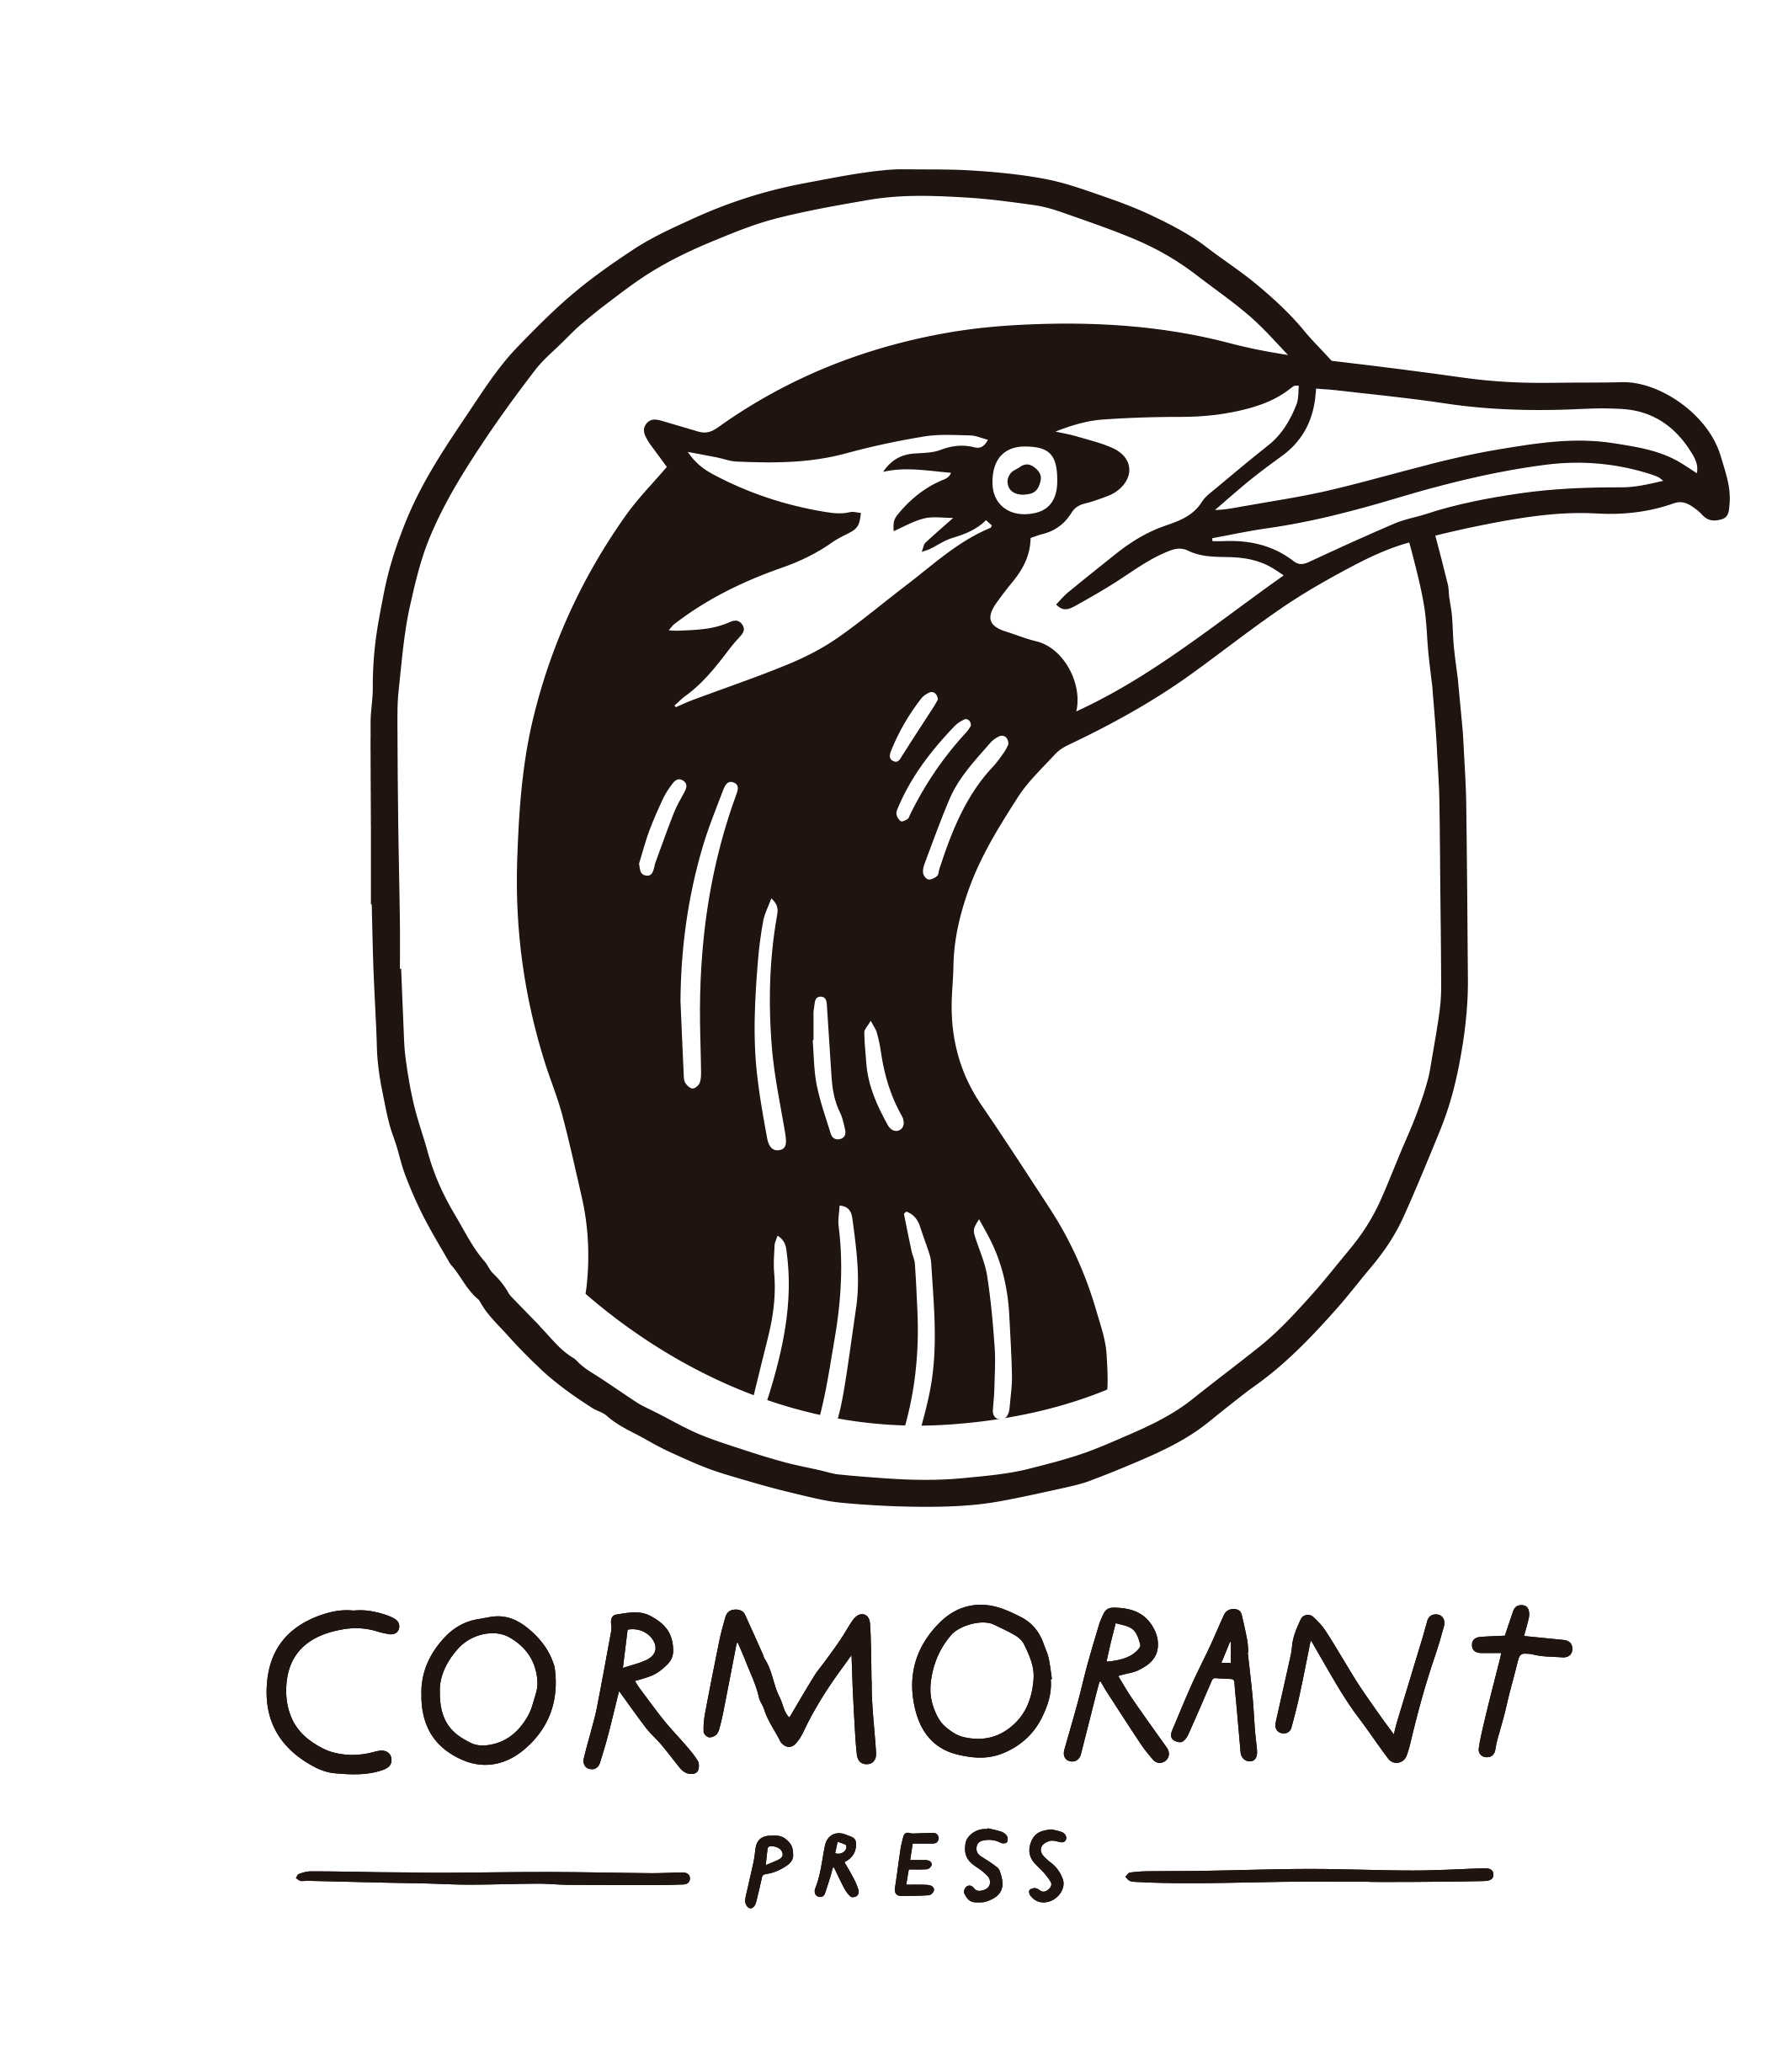 Cormorant Press—San Francisco